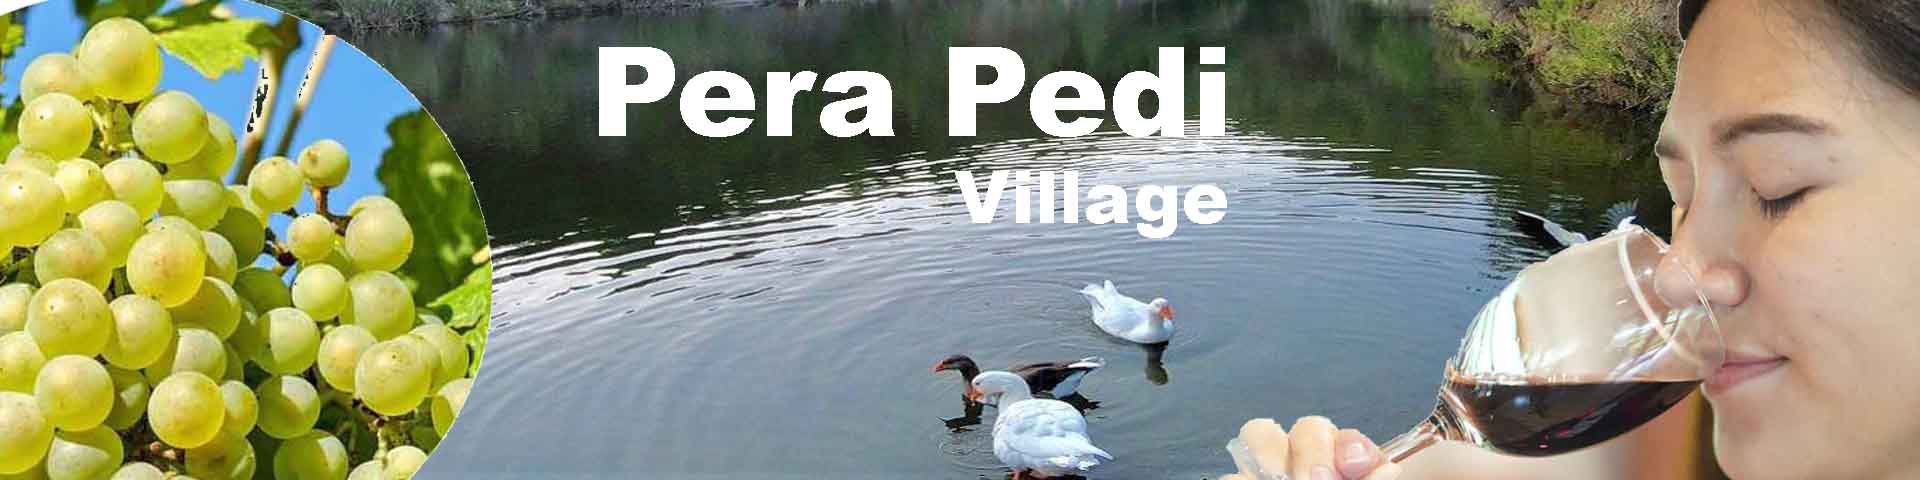 Pera Pedi Wine Village